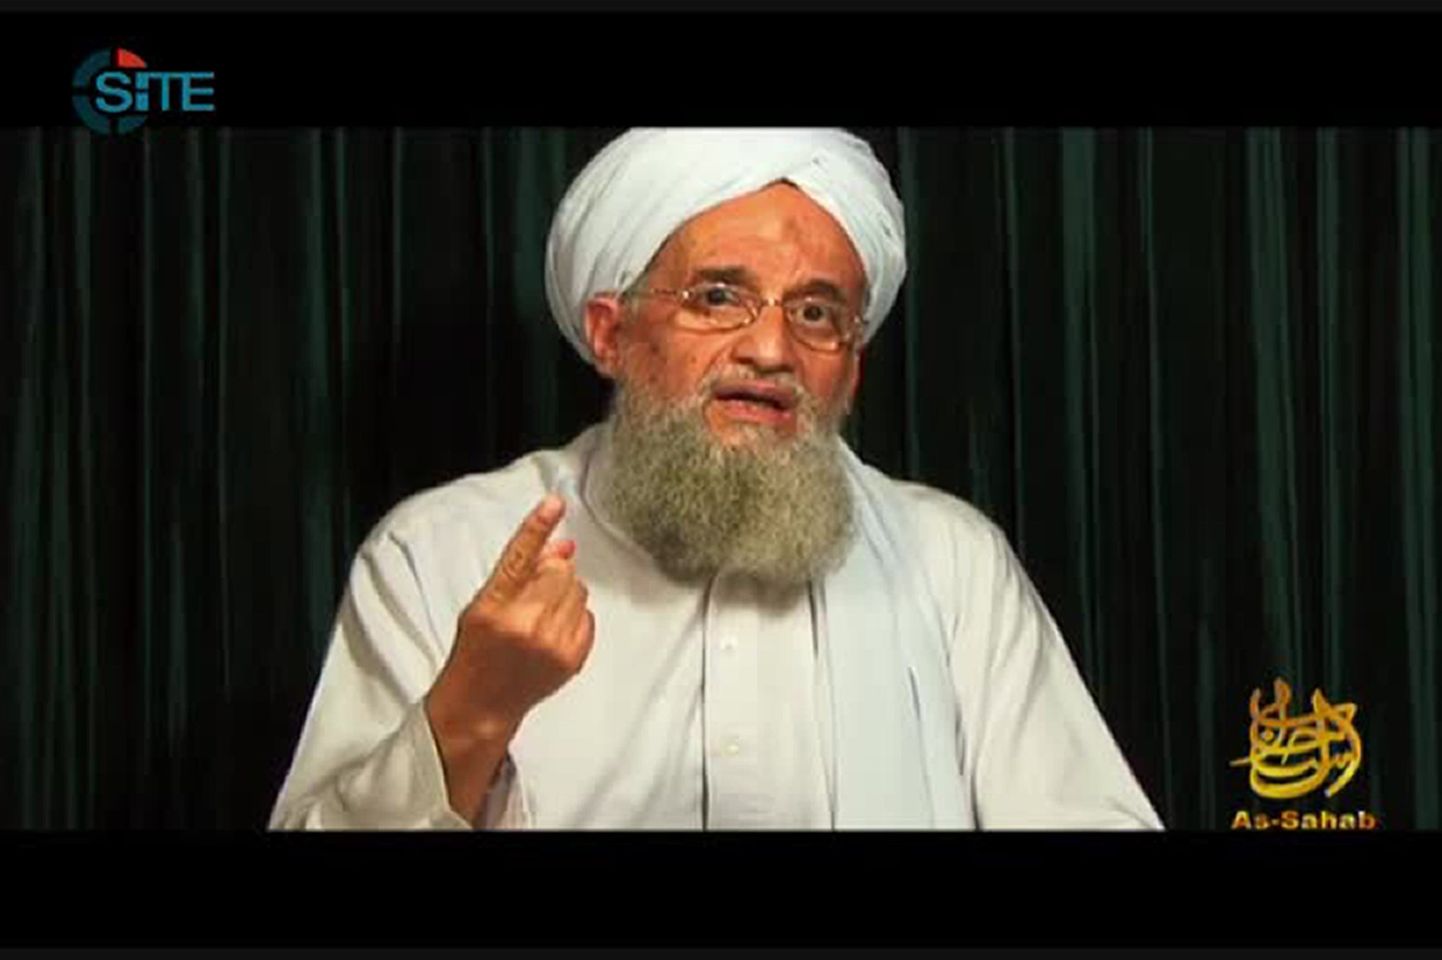 Terrorivõrgustiku Al-Qaeda egiptlasest liider Ayman al-Zawahiri.